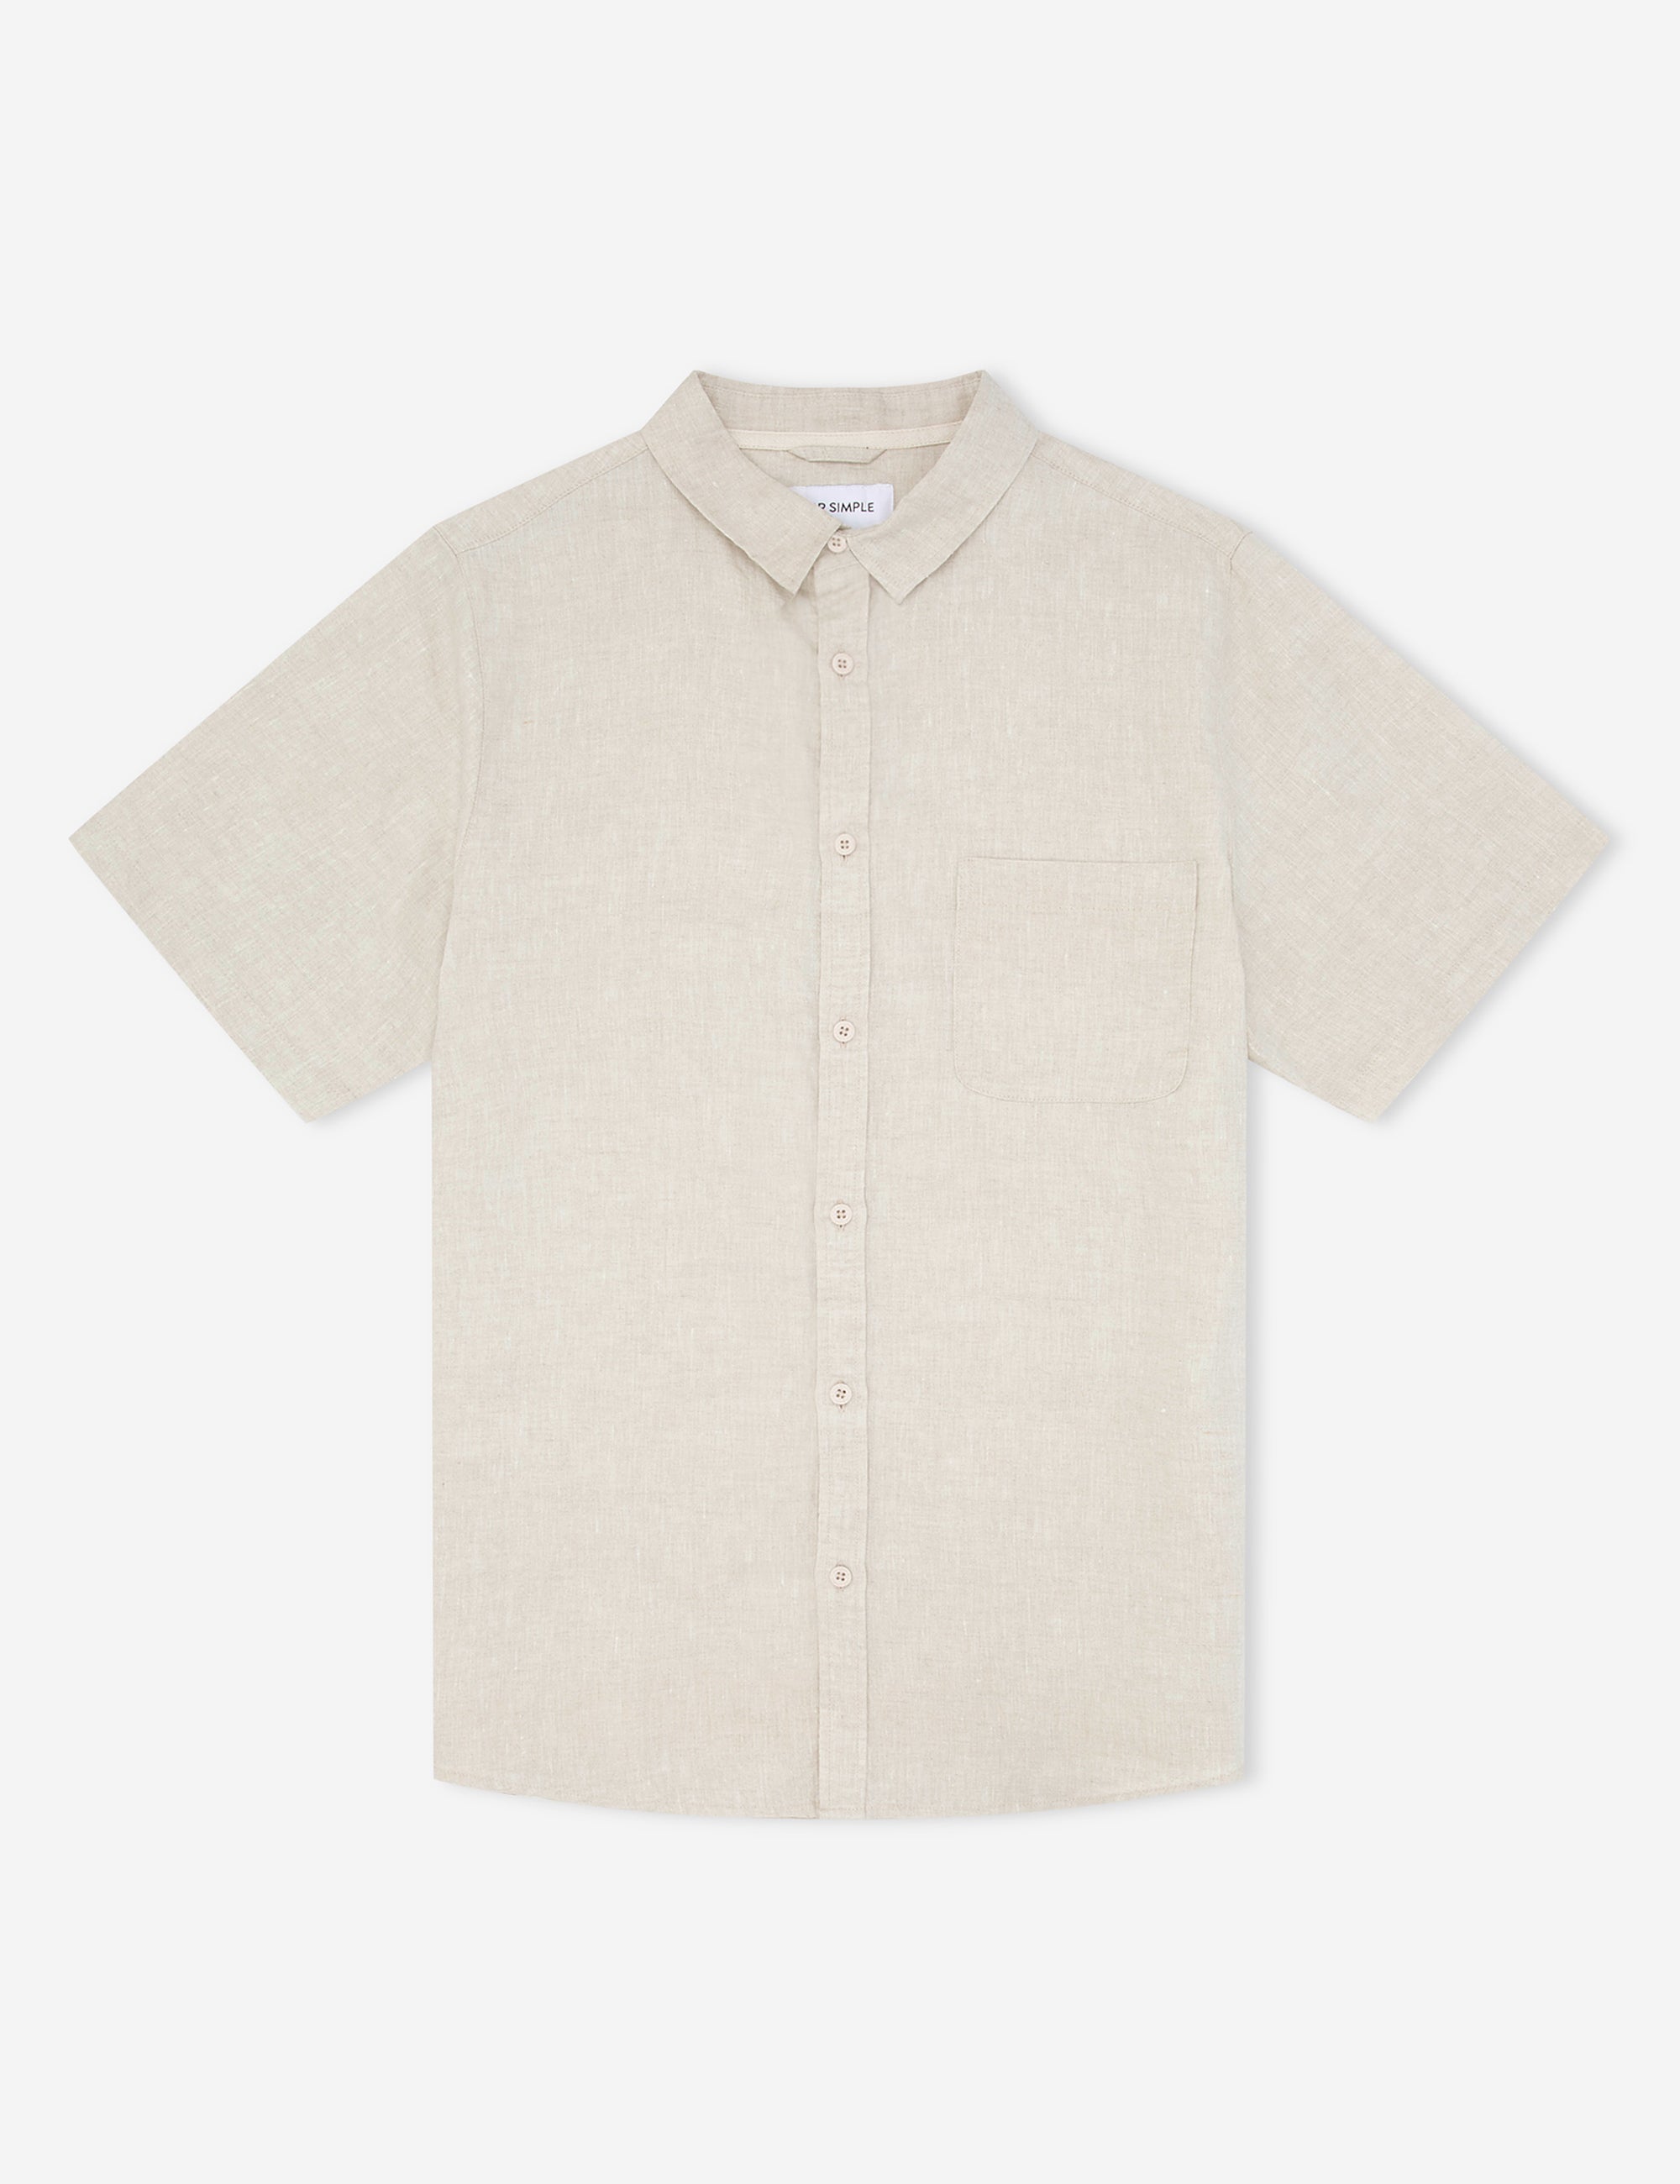 Mr Simple linen short sleeve shirt - Natural